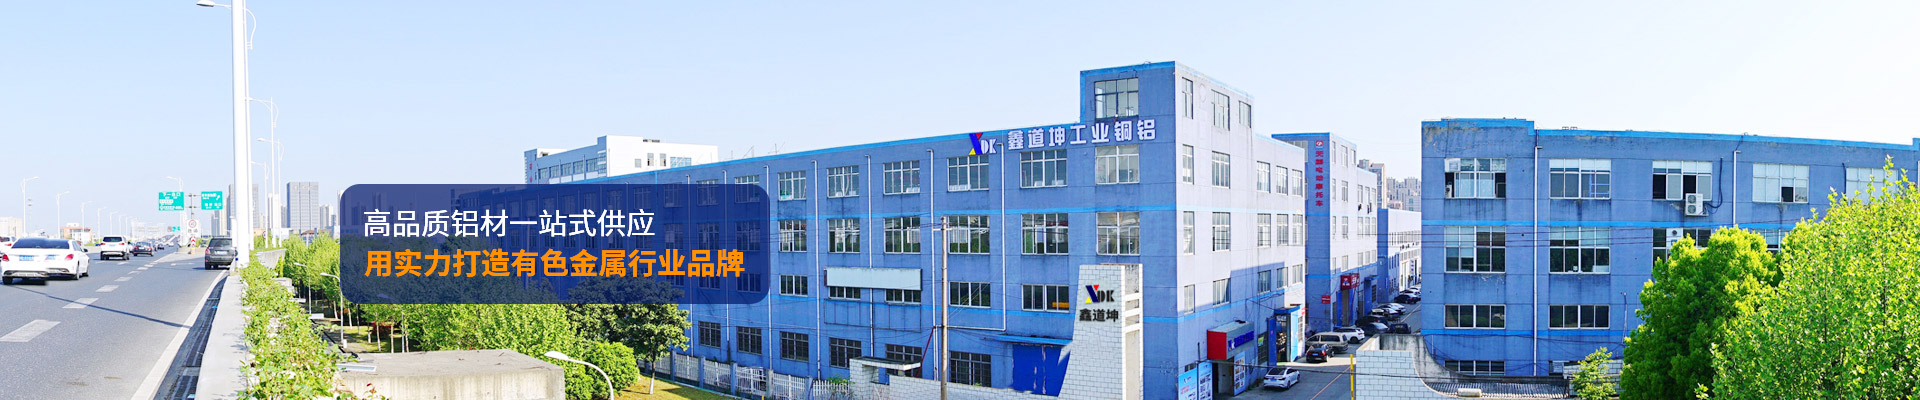 鑫道坤-高品质铝材一站式供应